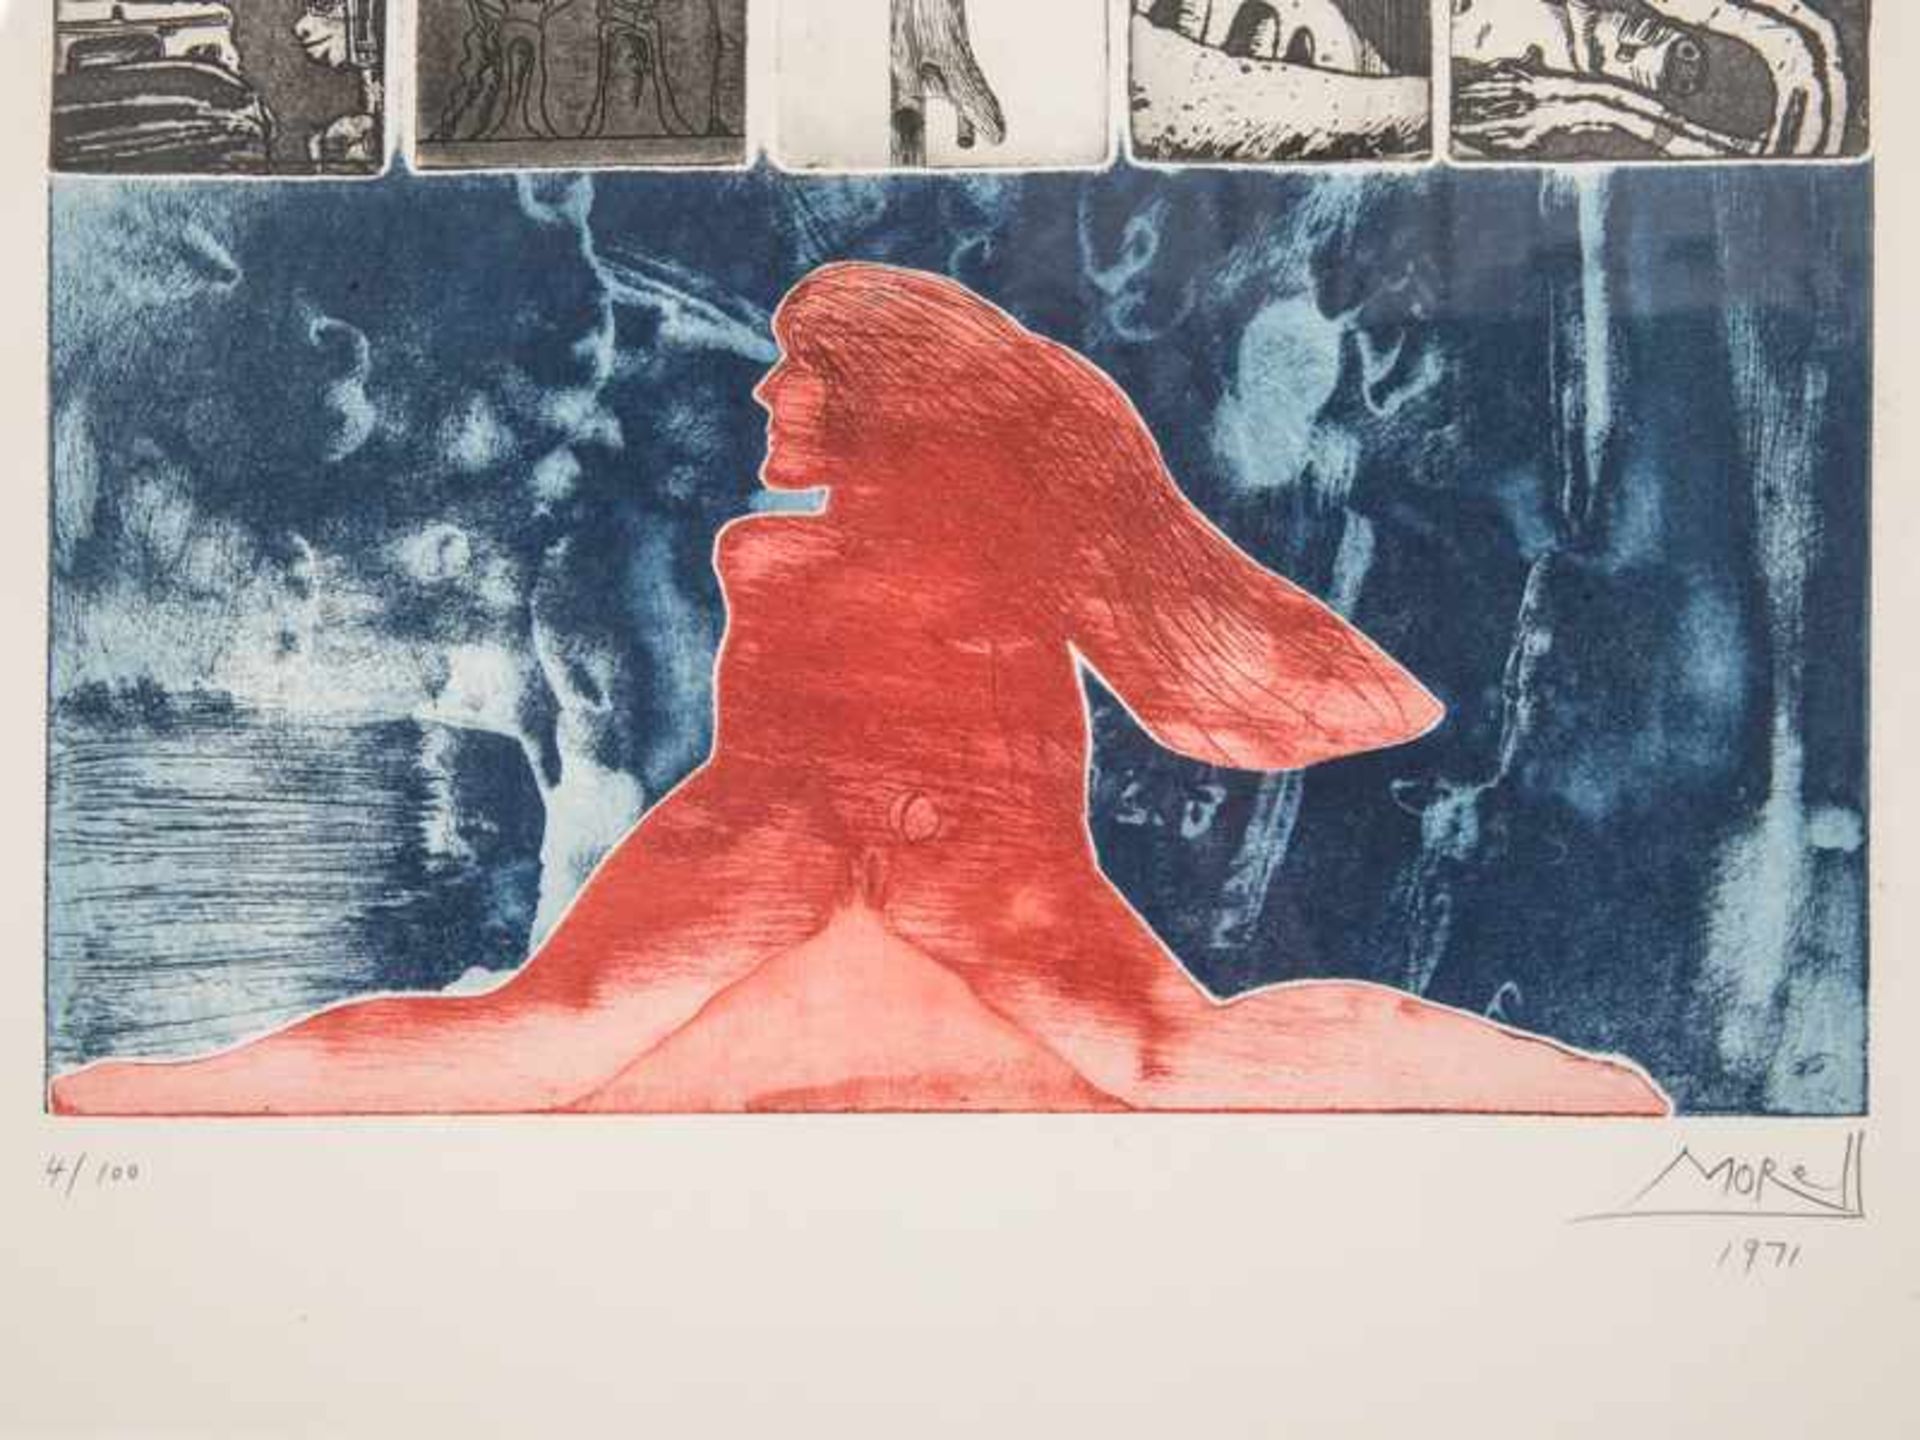 Morell, Pit (* 1939). Farb-Aquatintaradierung. Blaugrundige Komposition mit rotem weiblichen Akt, - Bild 8 aus 10